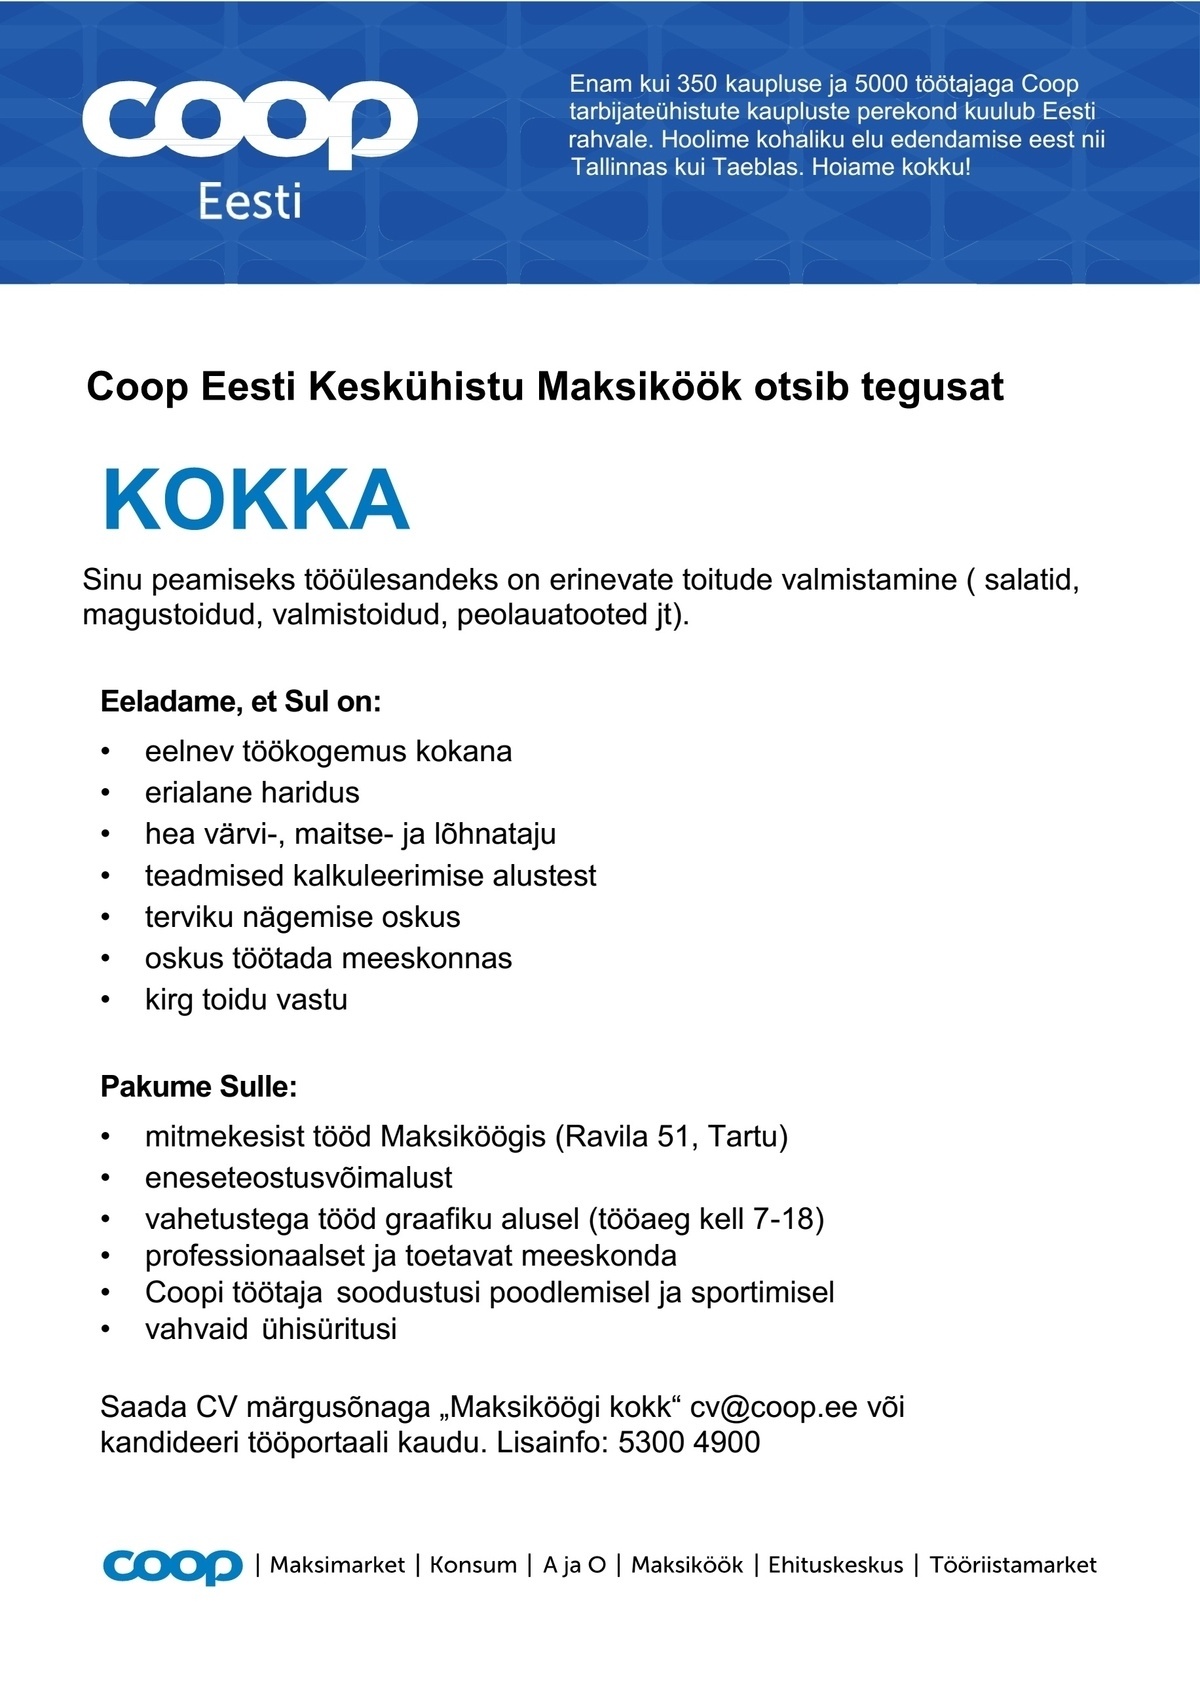 Coop Eesti Keskühistu Kokk (Maksiköök)